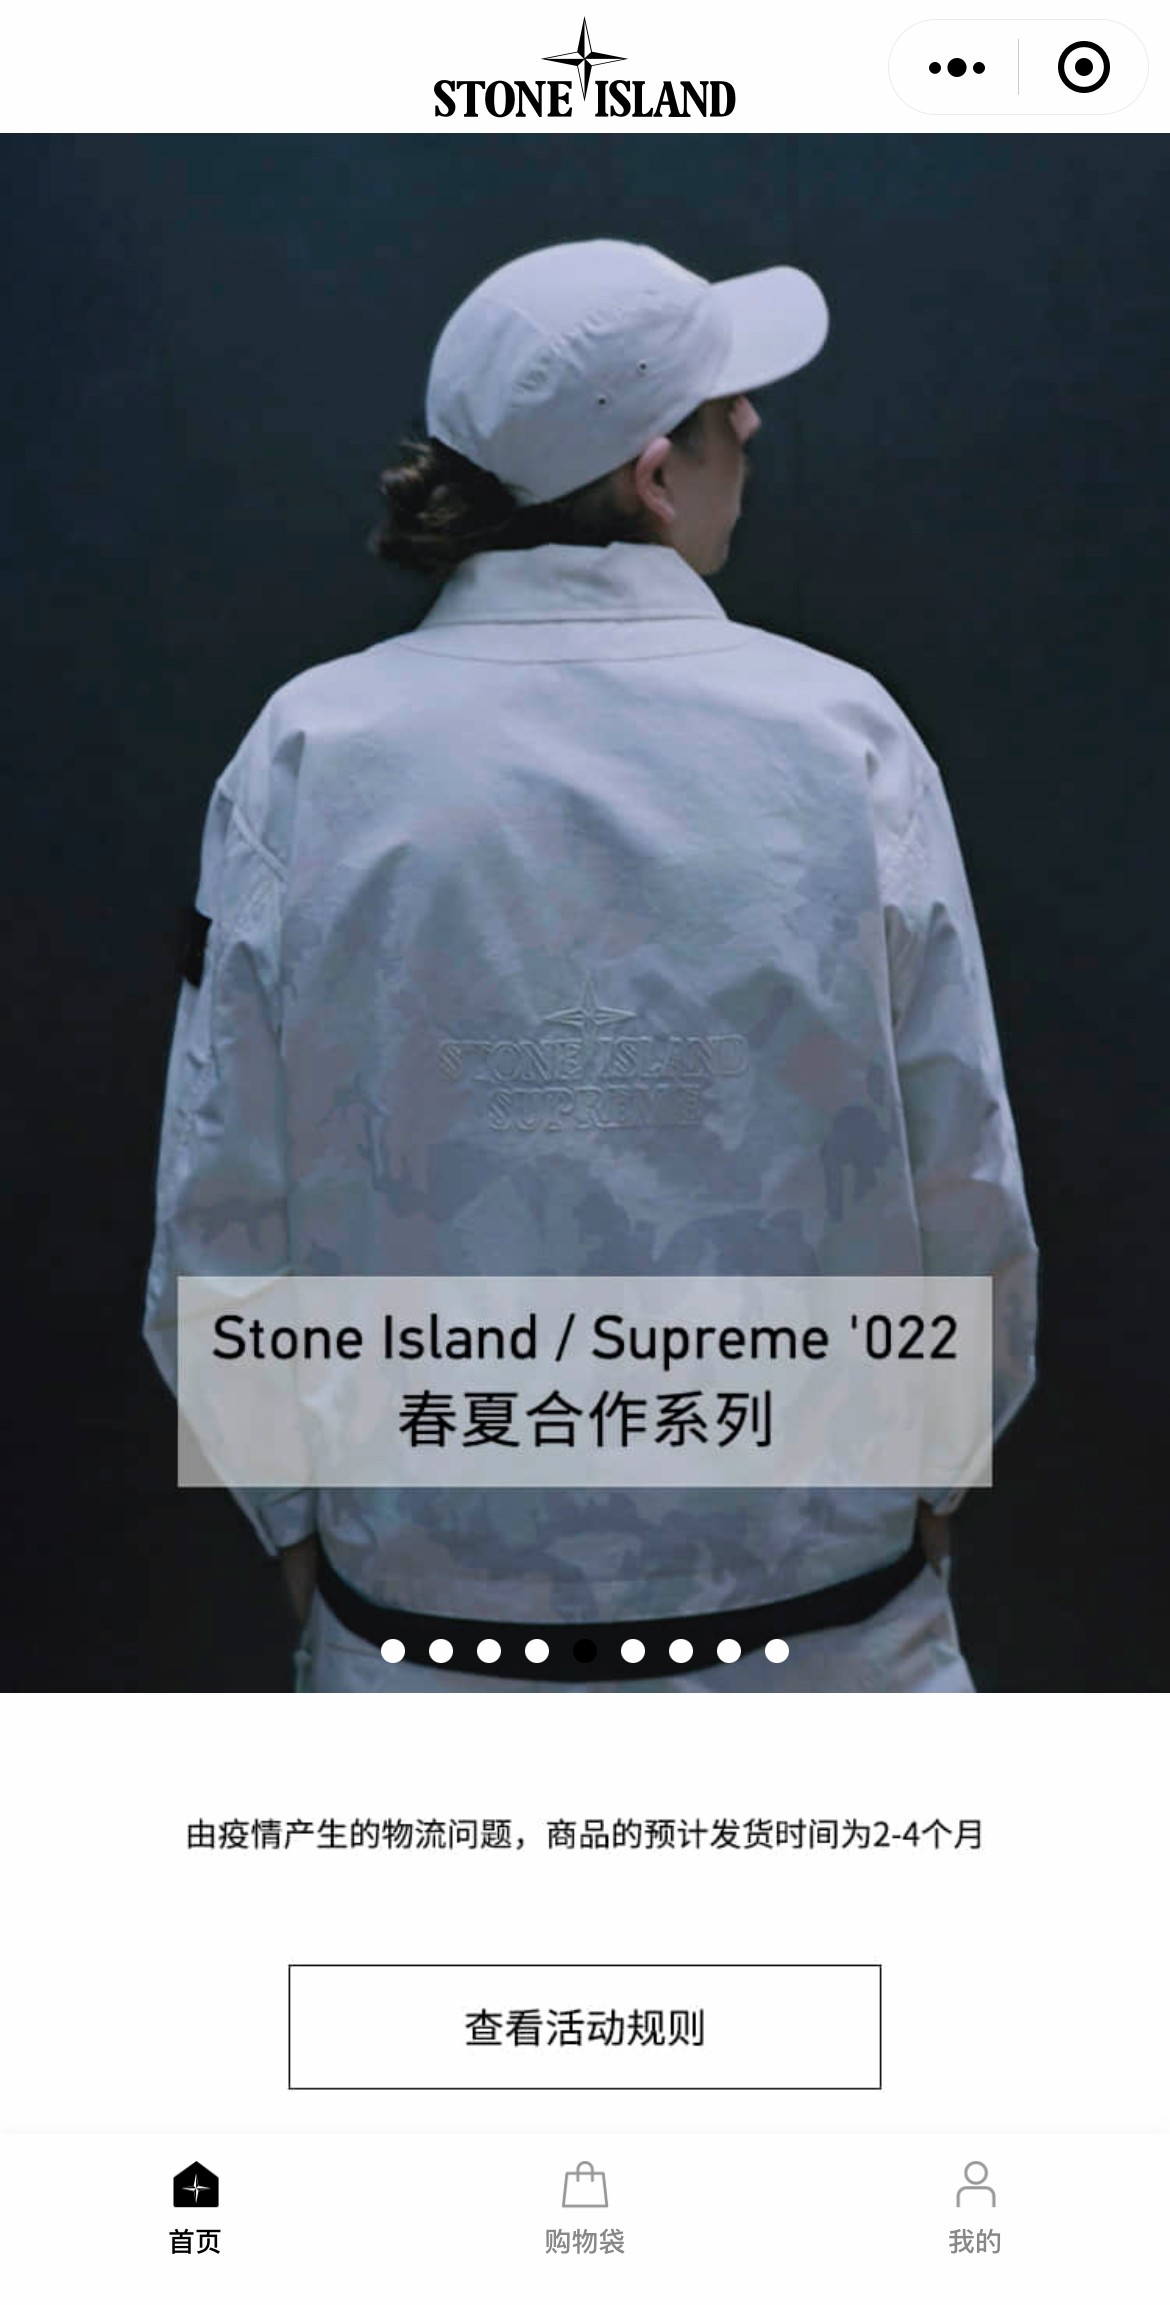 Supreme,Stone Island,SKP-S  不拼手速抽签发售！「Supreme x 石头岛」最后 24 小时登记！